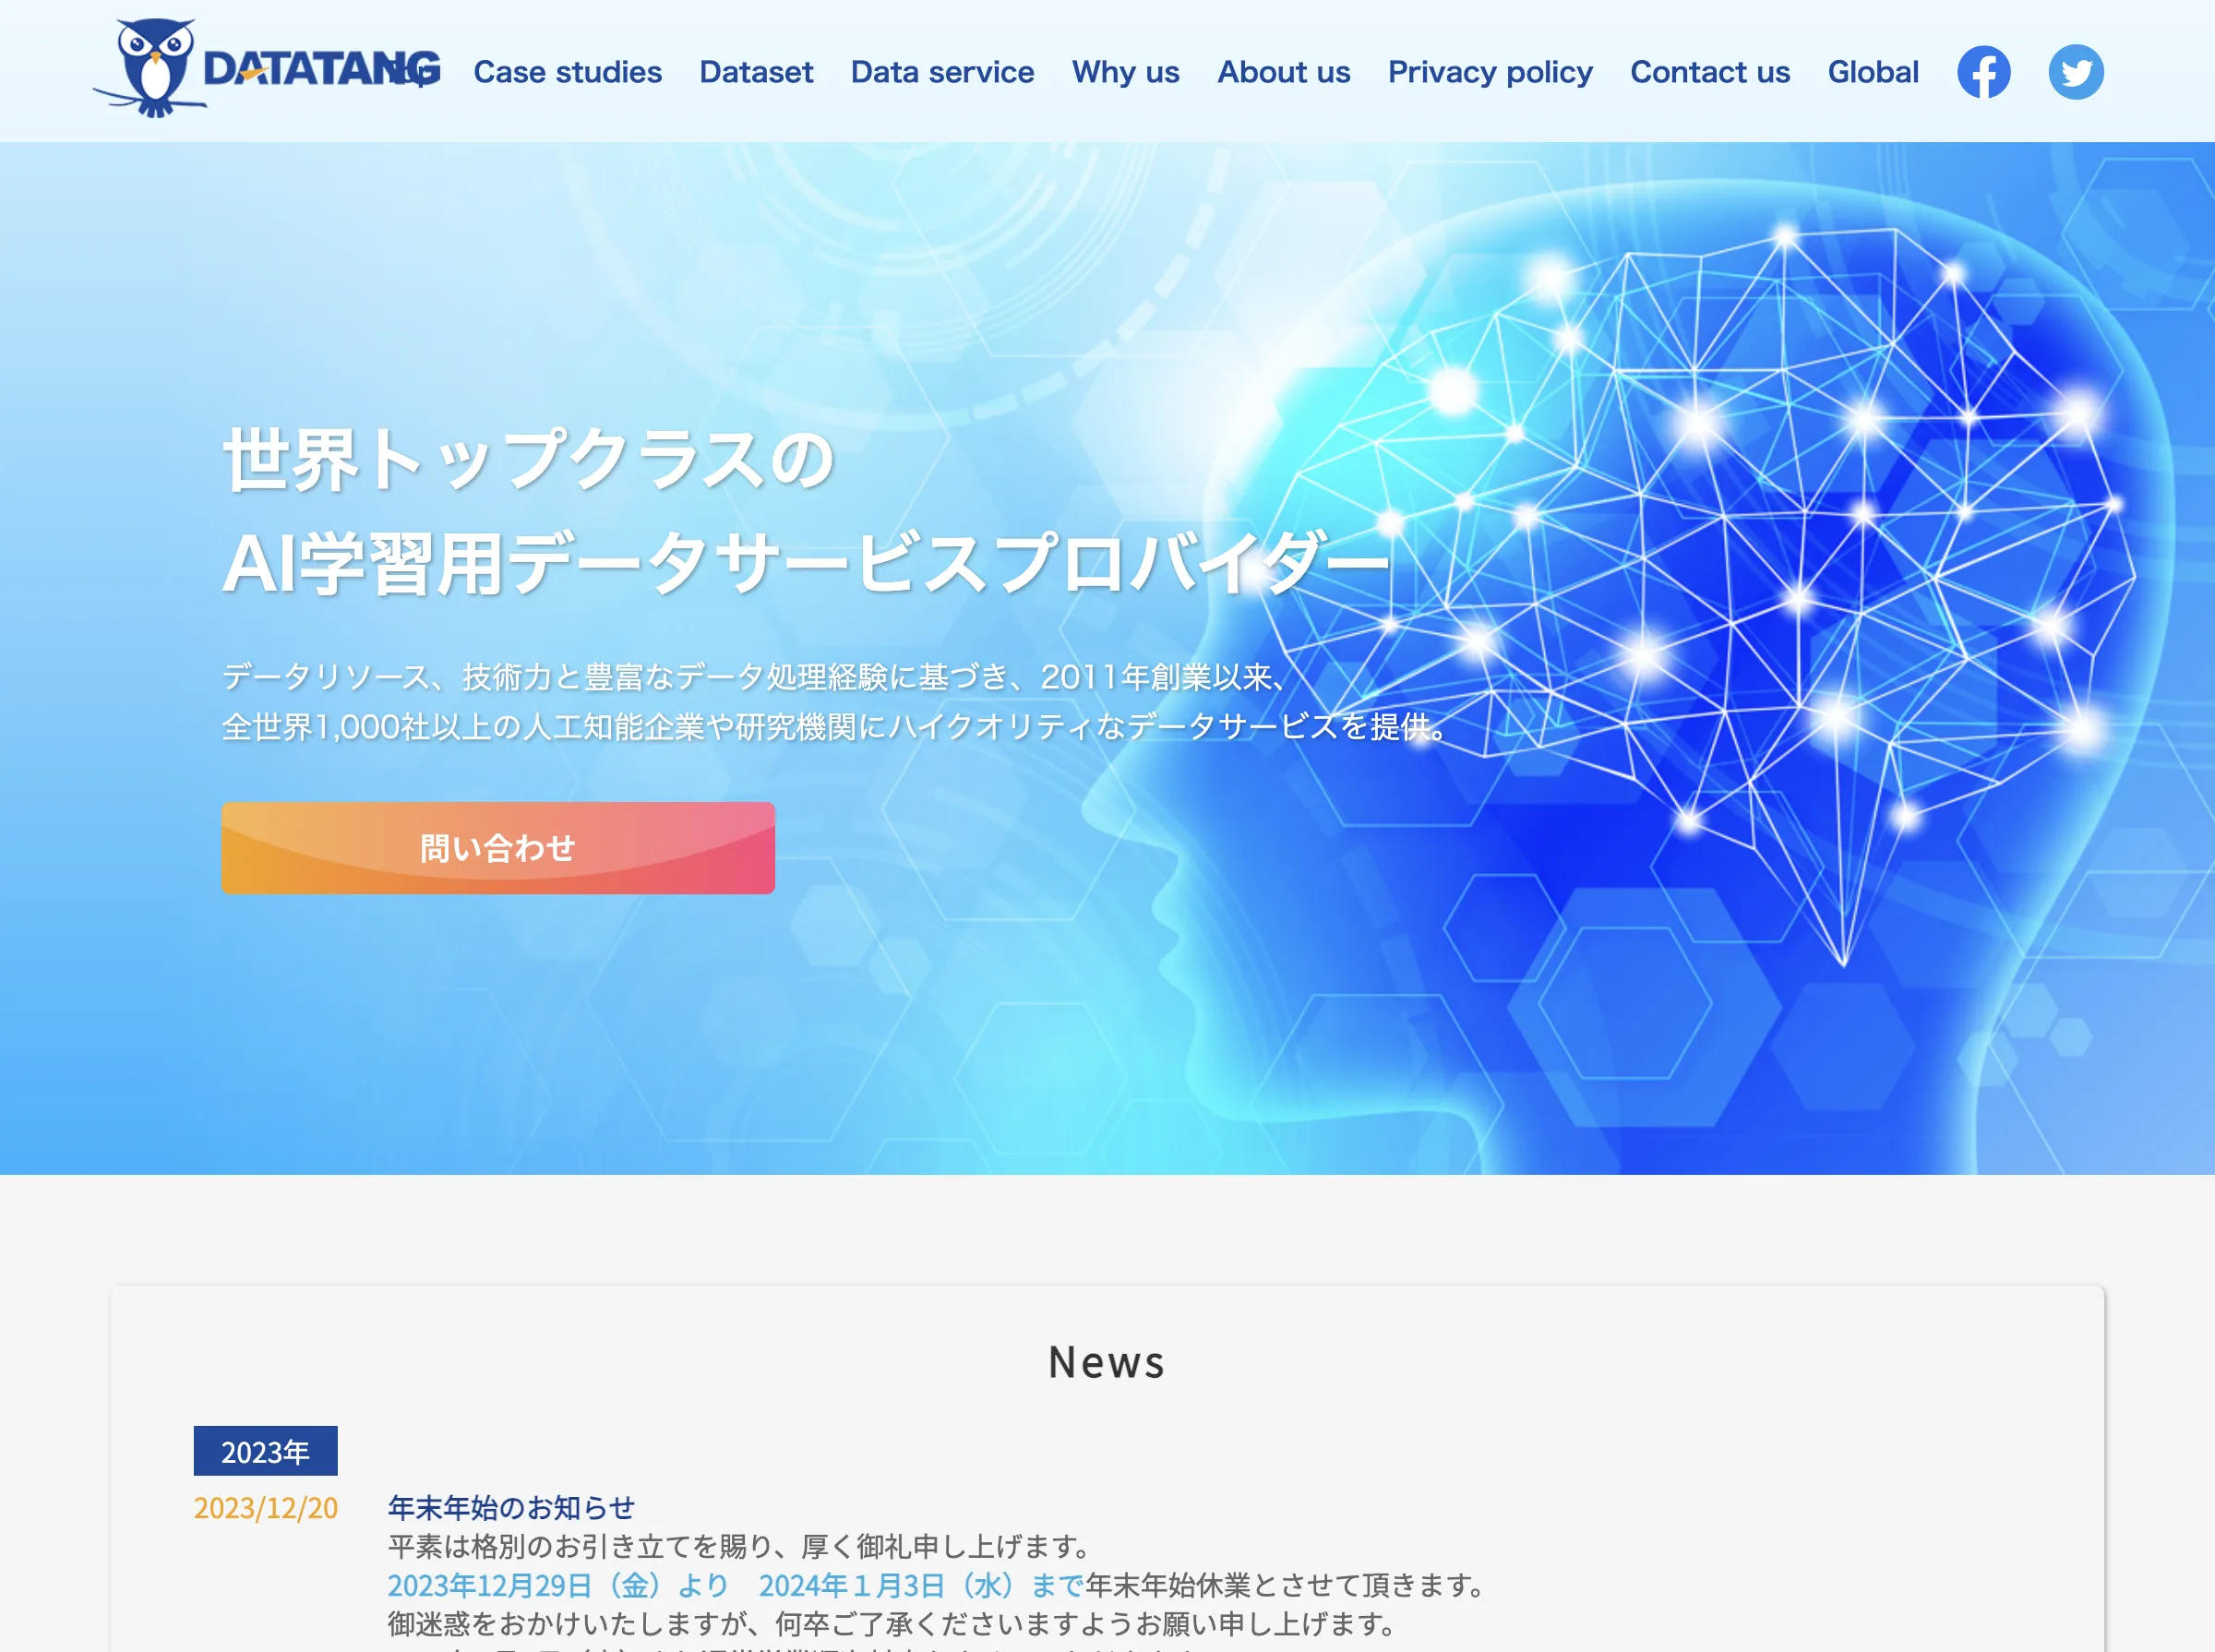 Datatang AIアノテーションサービス(Datatang株式会社)